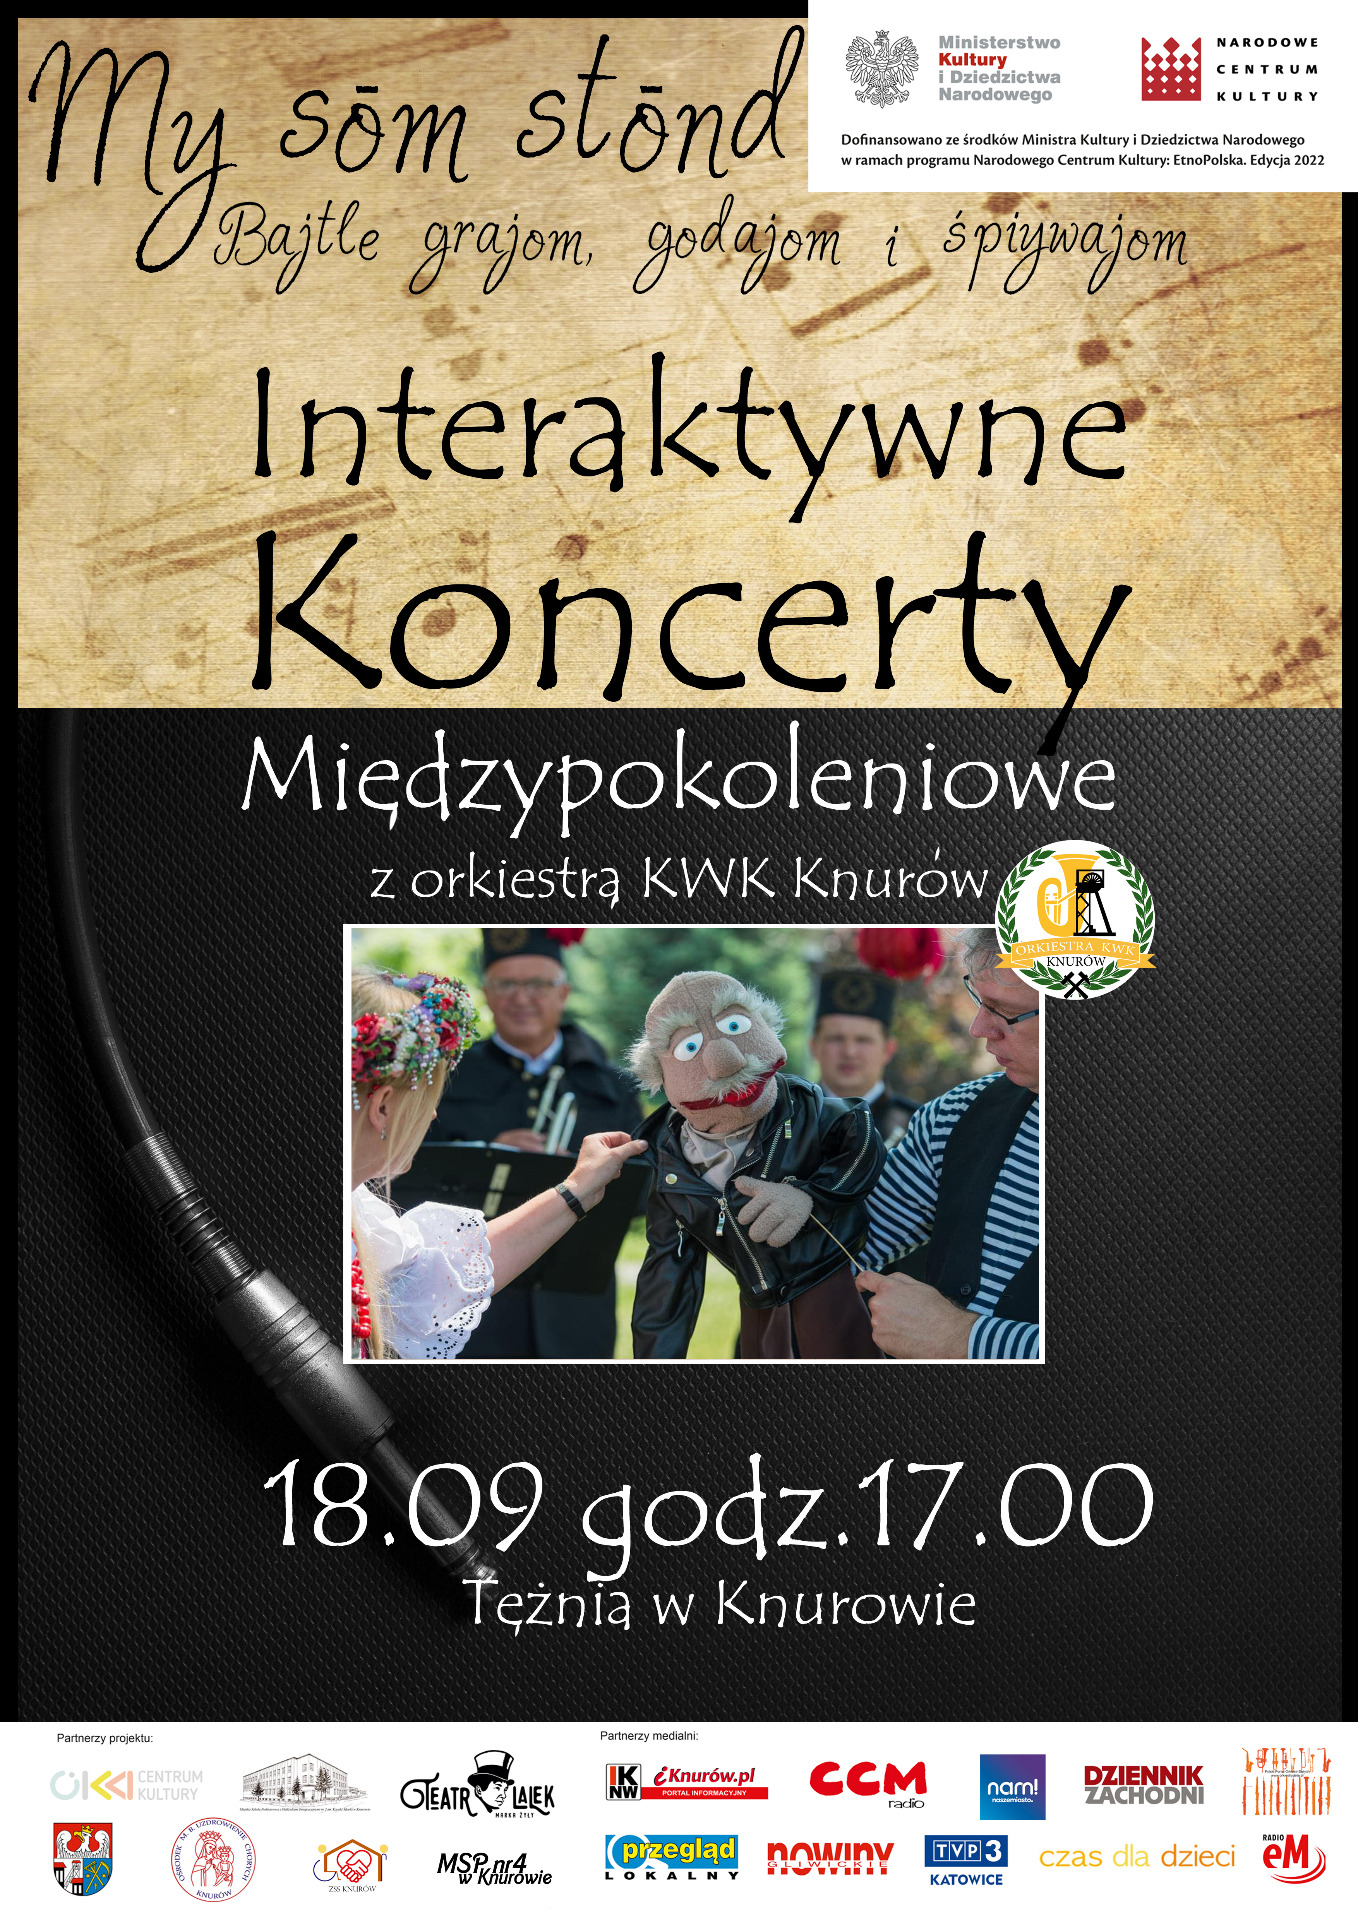 Interaktywne Koncerty Międzypokoleniowe z orkiestrą KWK Knurów - Obrazek 1